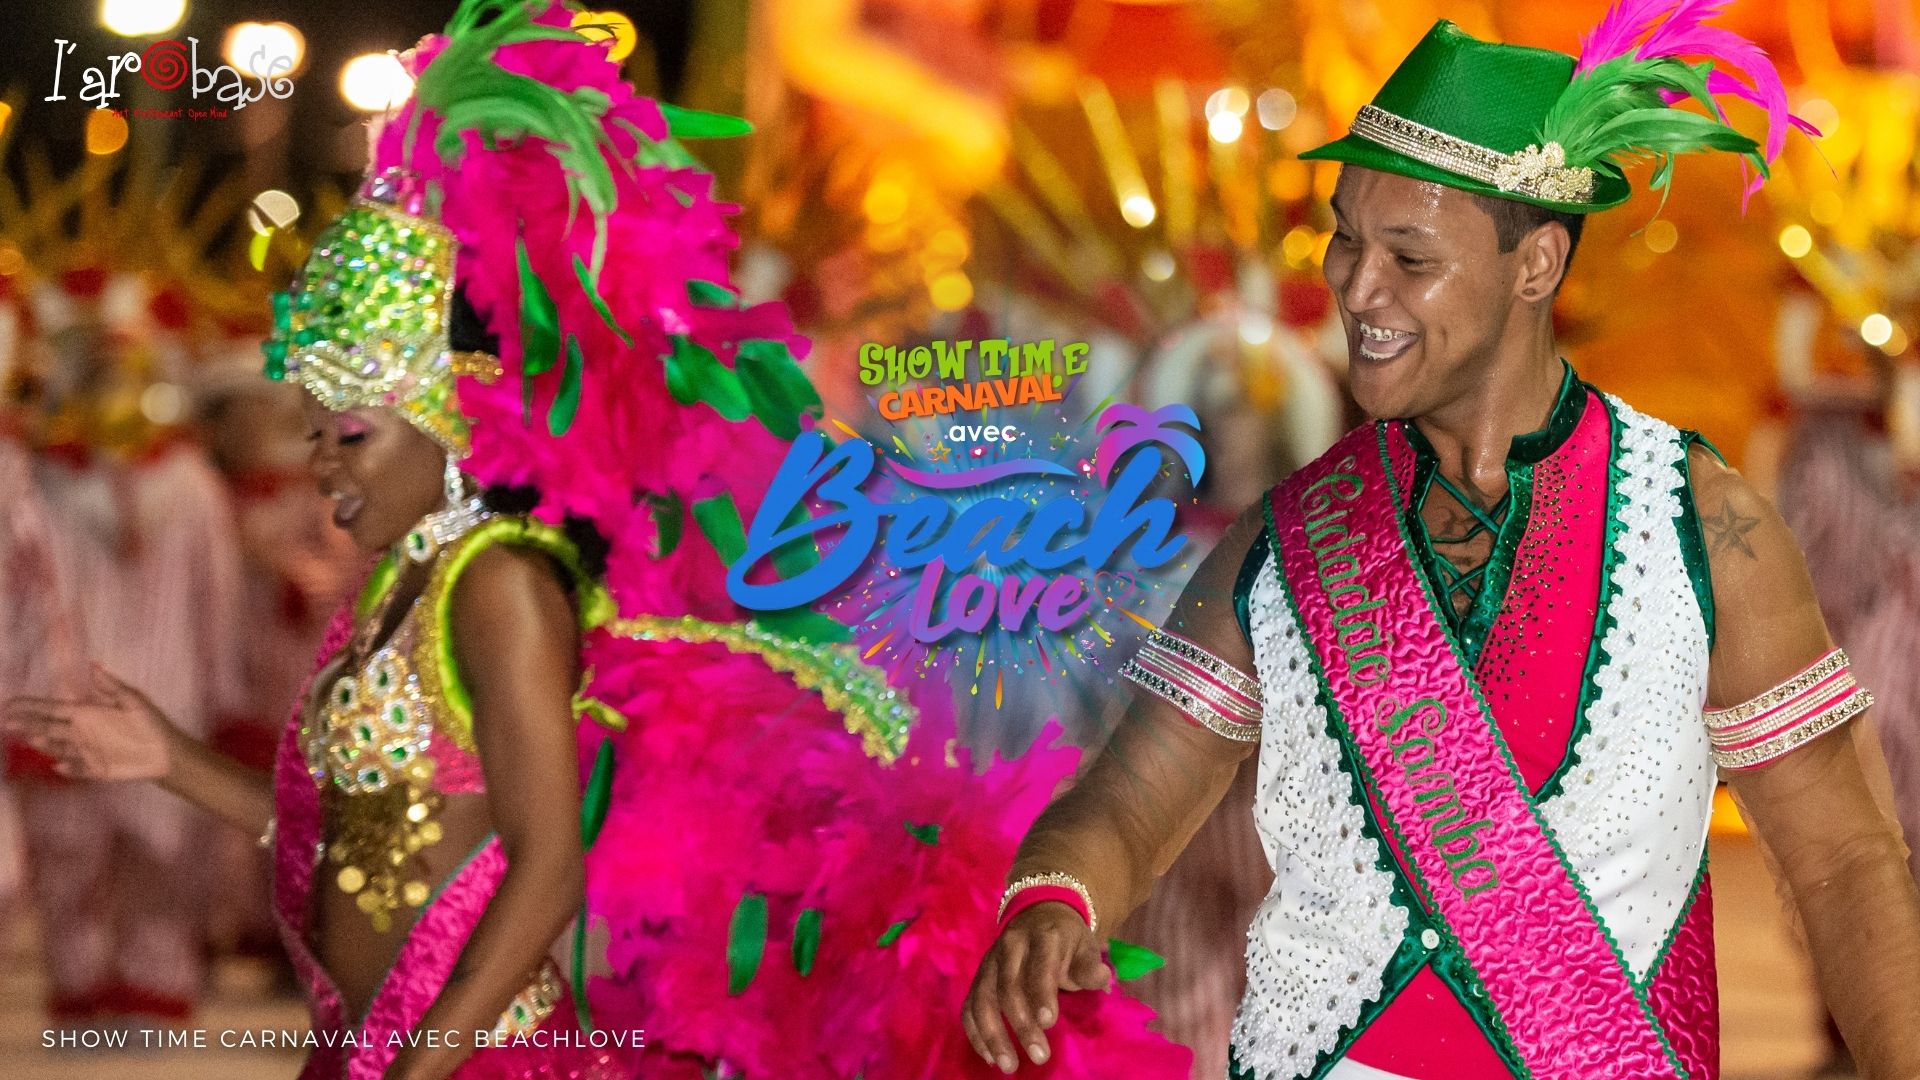 Show Time Carnaval avec BEACH LOVE